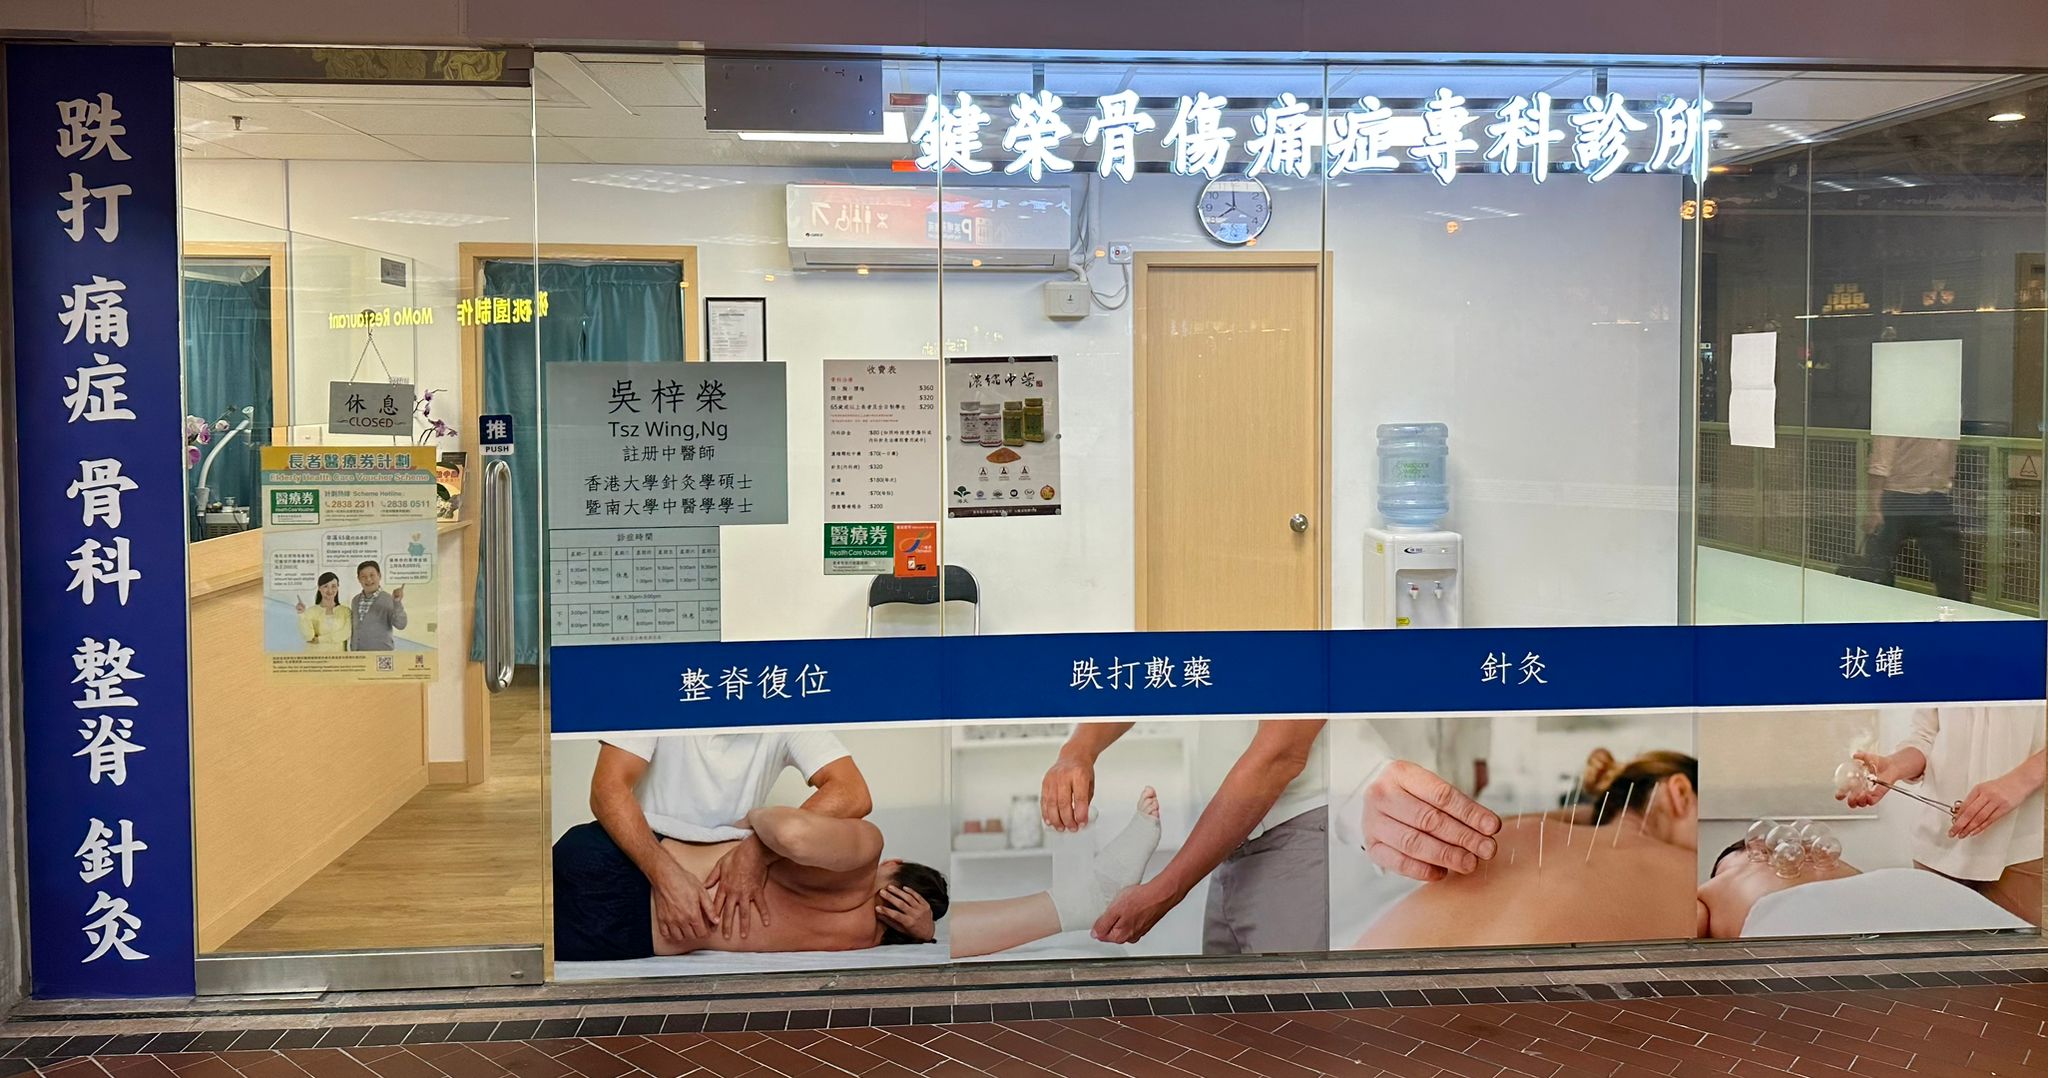 中医诊所 / 中医师鍵榮骨傷痛症專科診所 @ 香港中医师网 Hong Kong Chinese medicine clinic